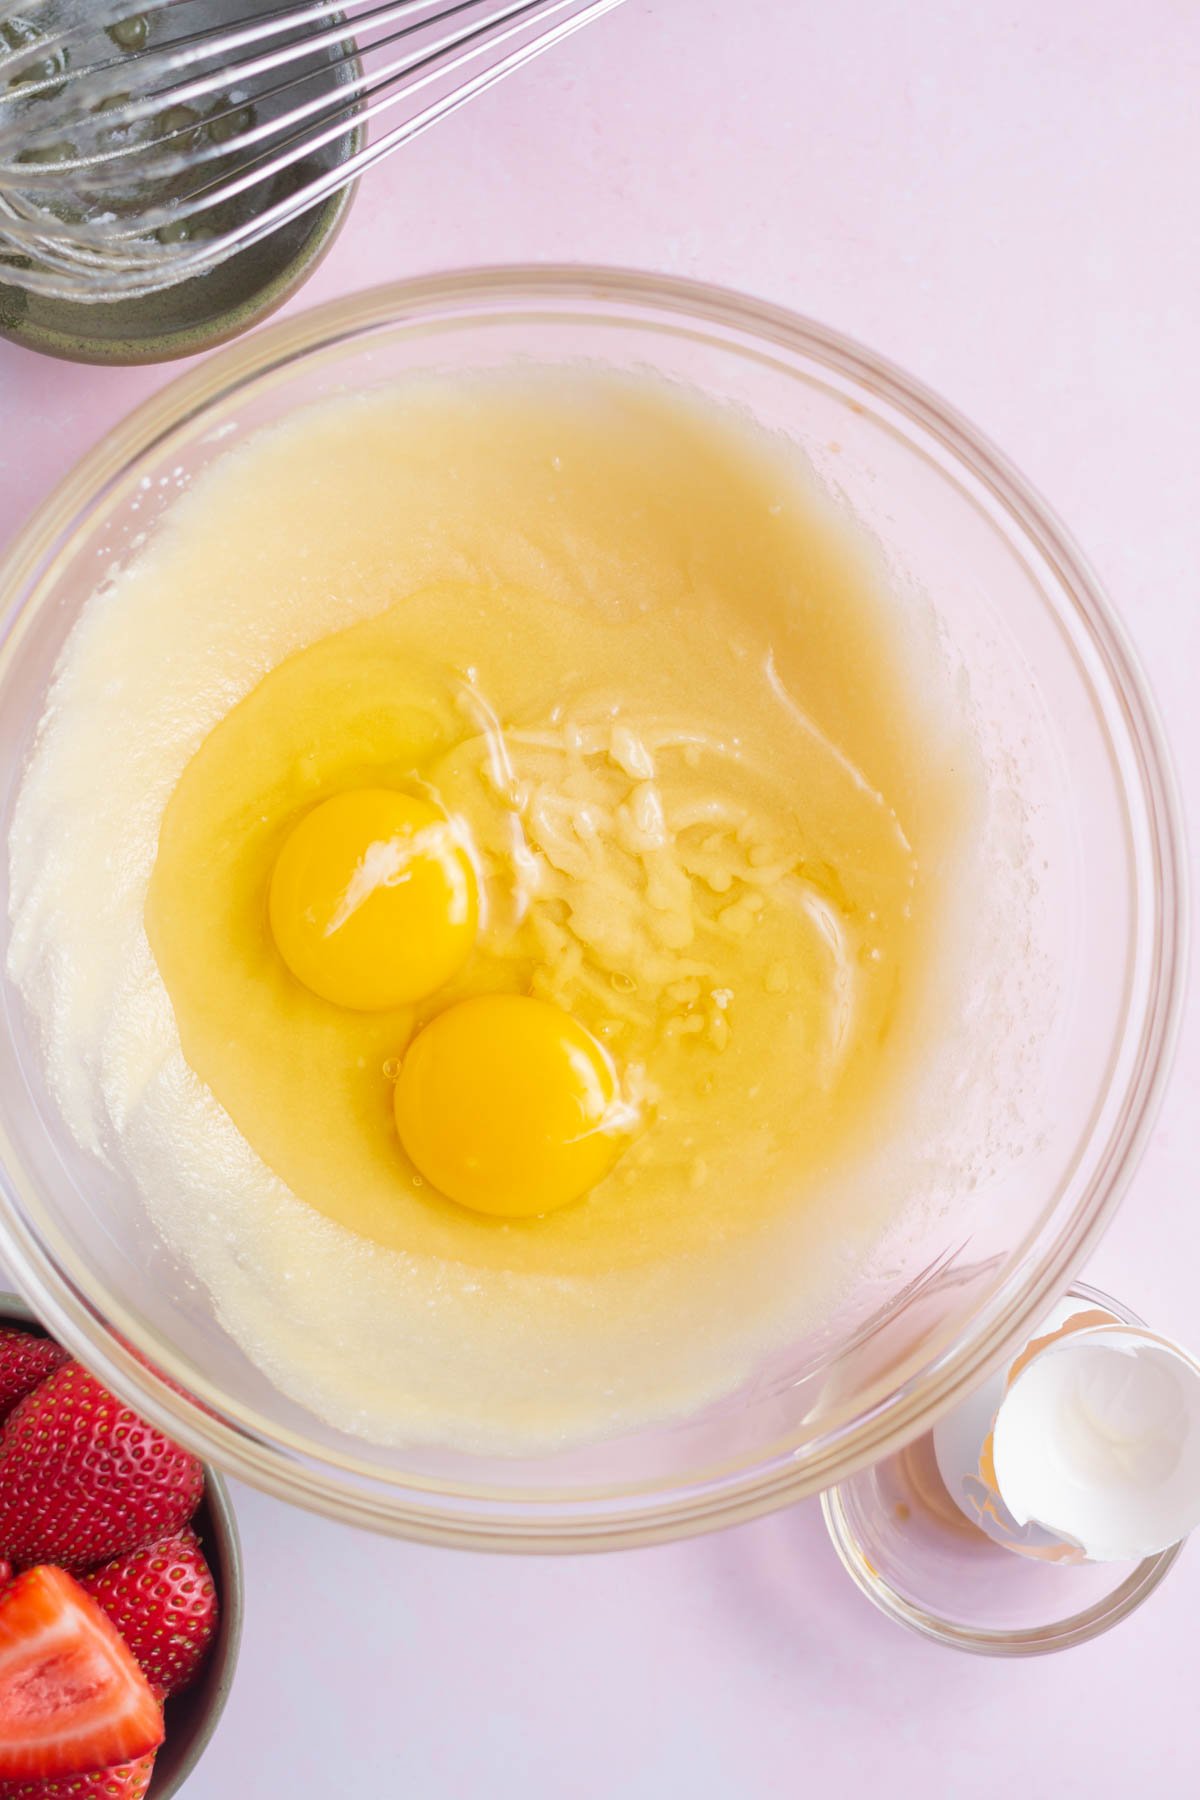 eggs added to vanilla cake batter